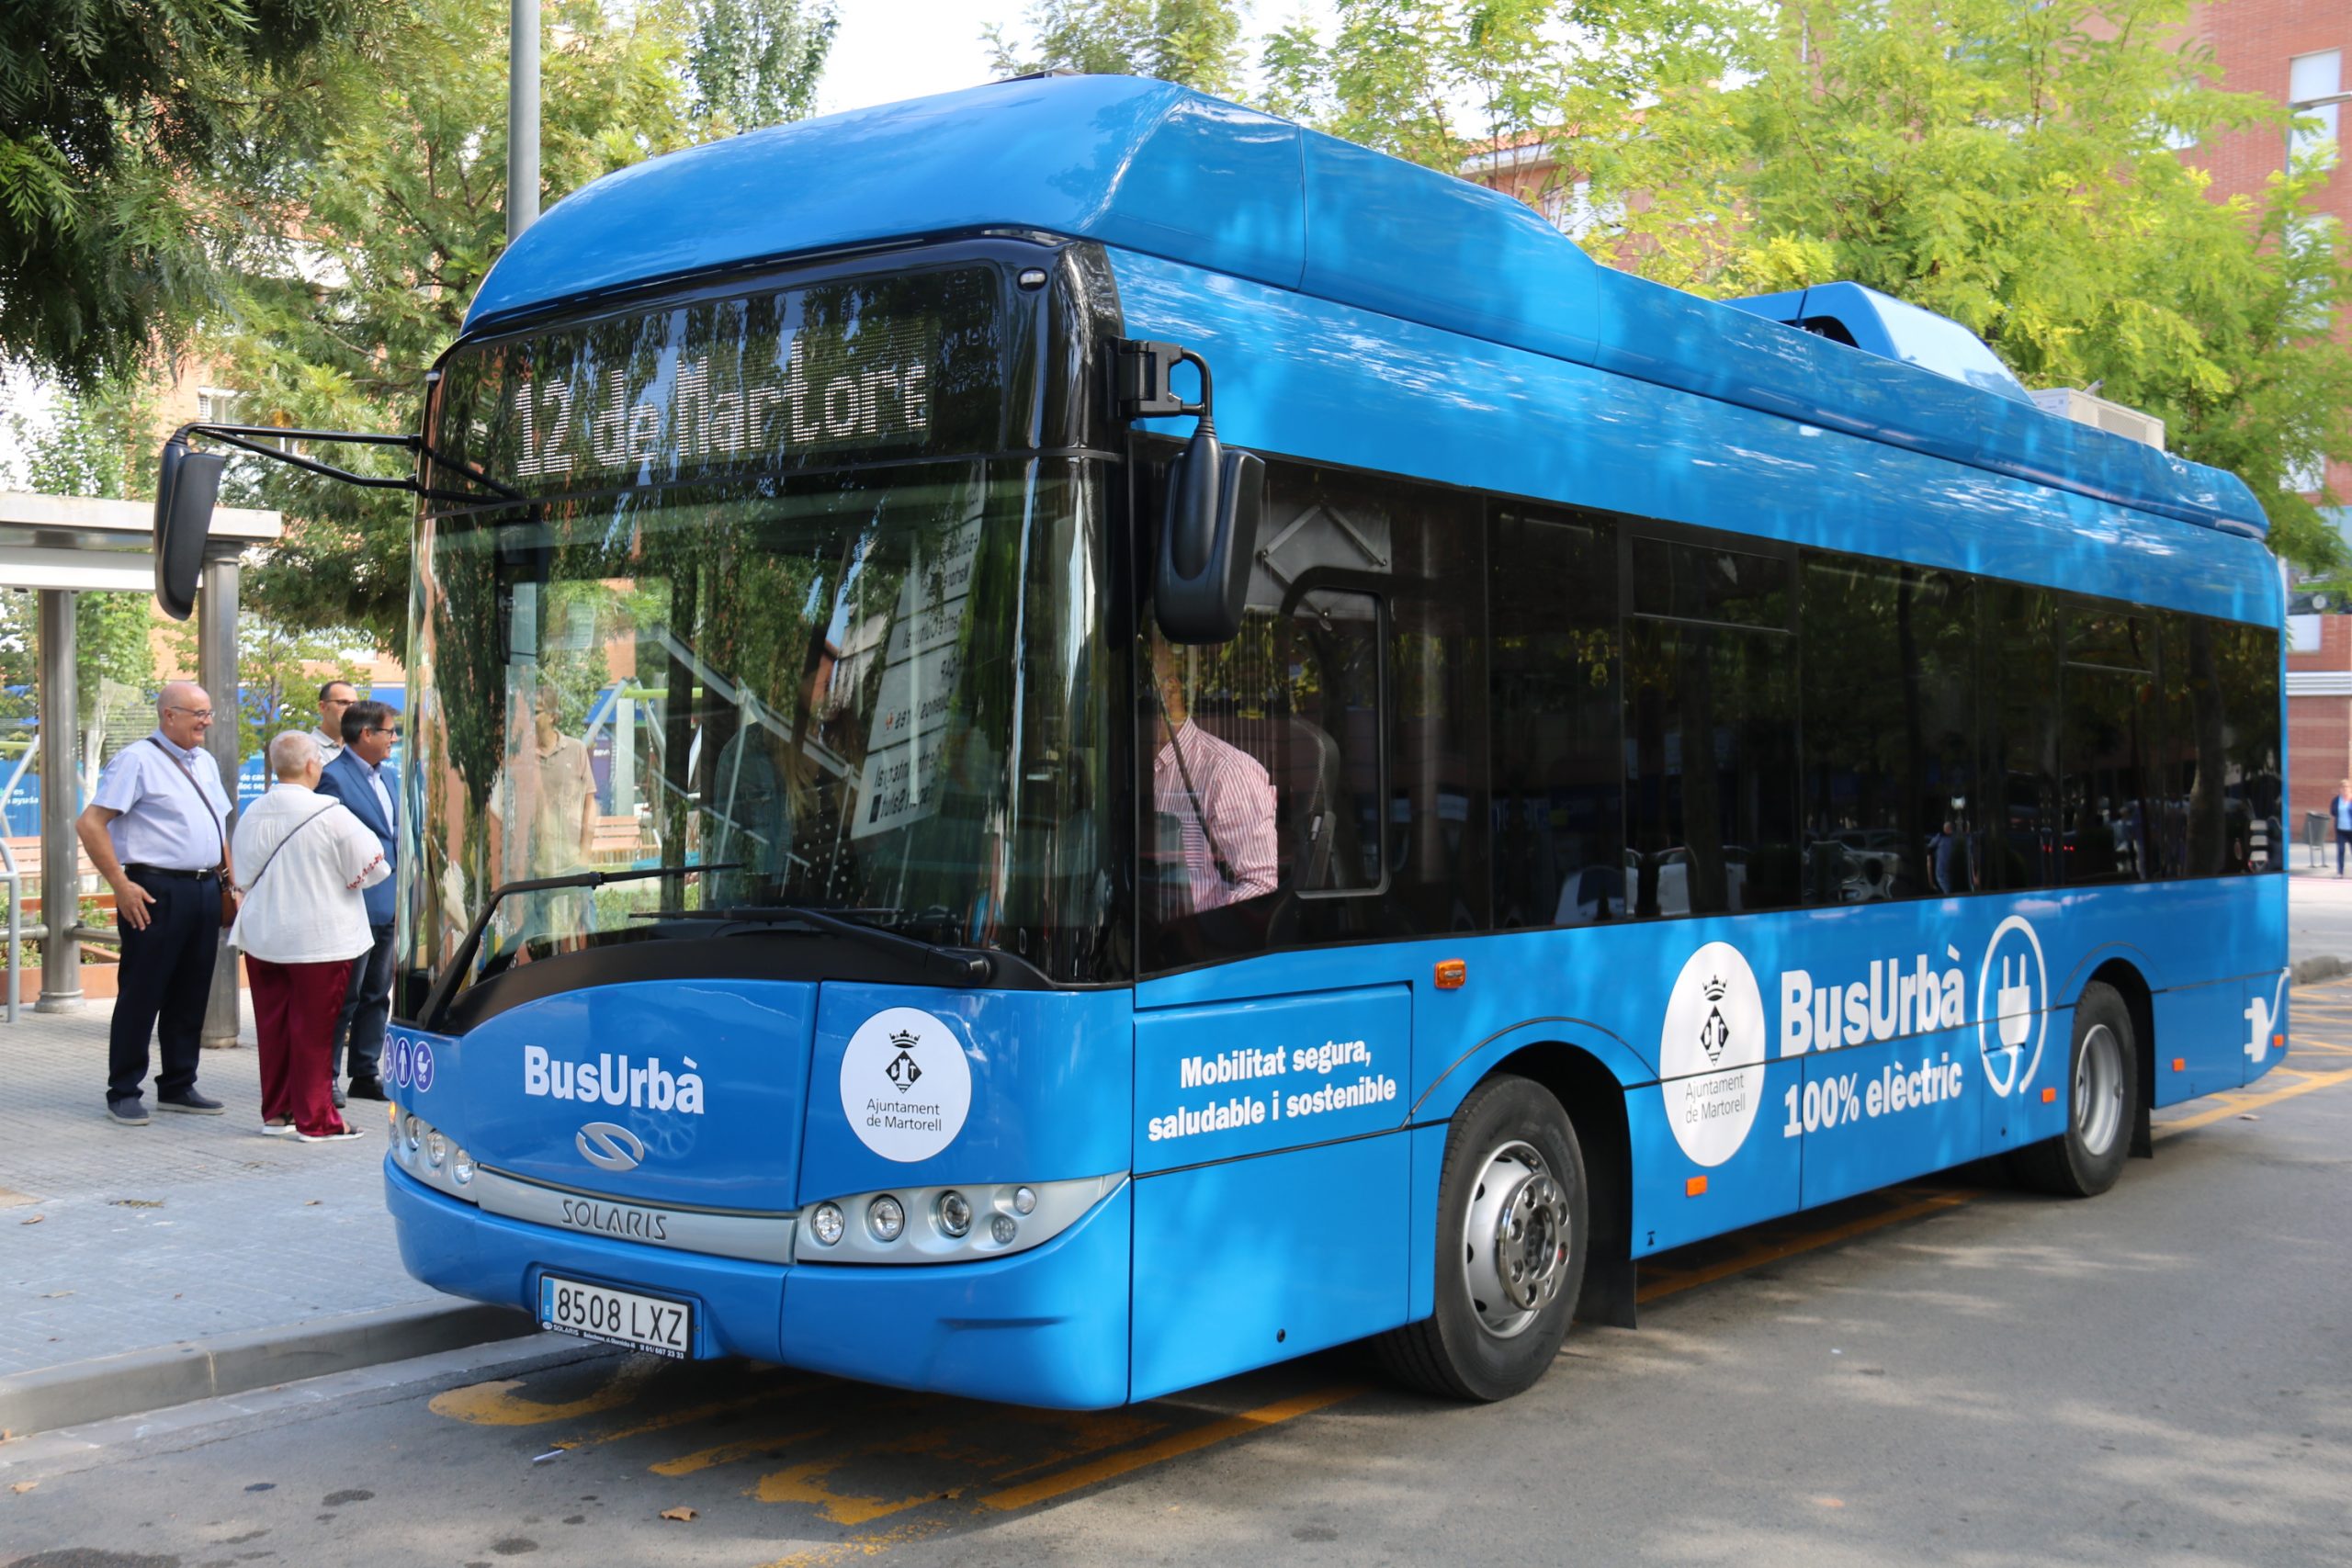 La Bustia autobus electric Martorell (3)